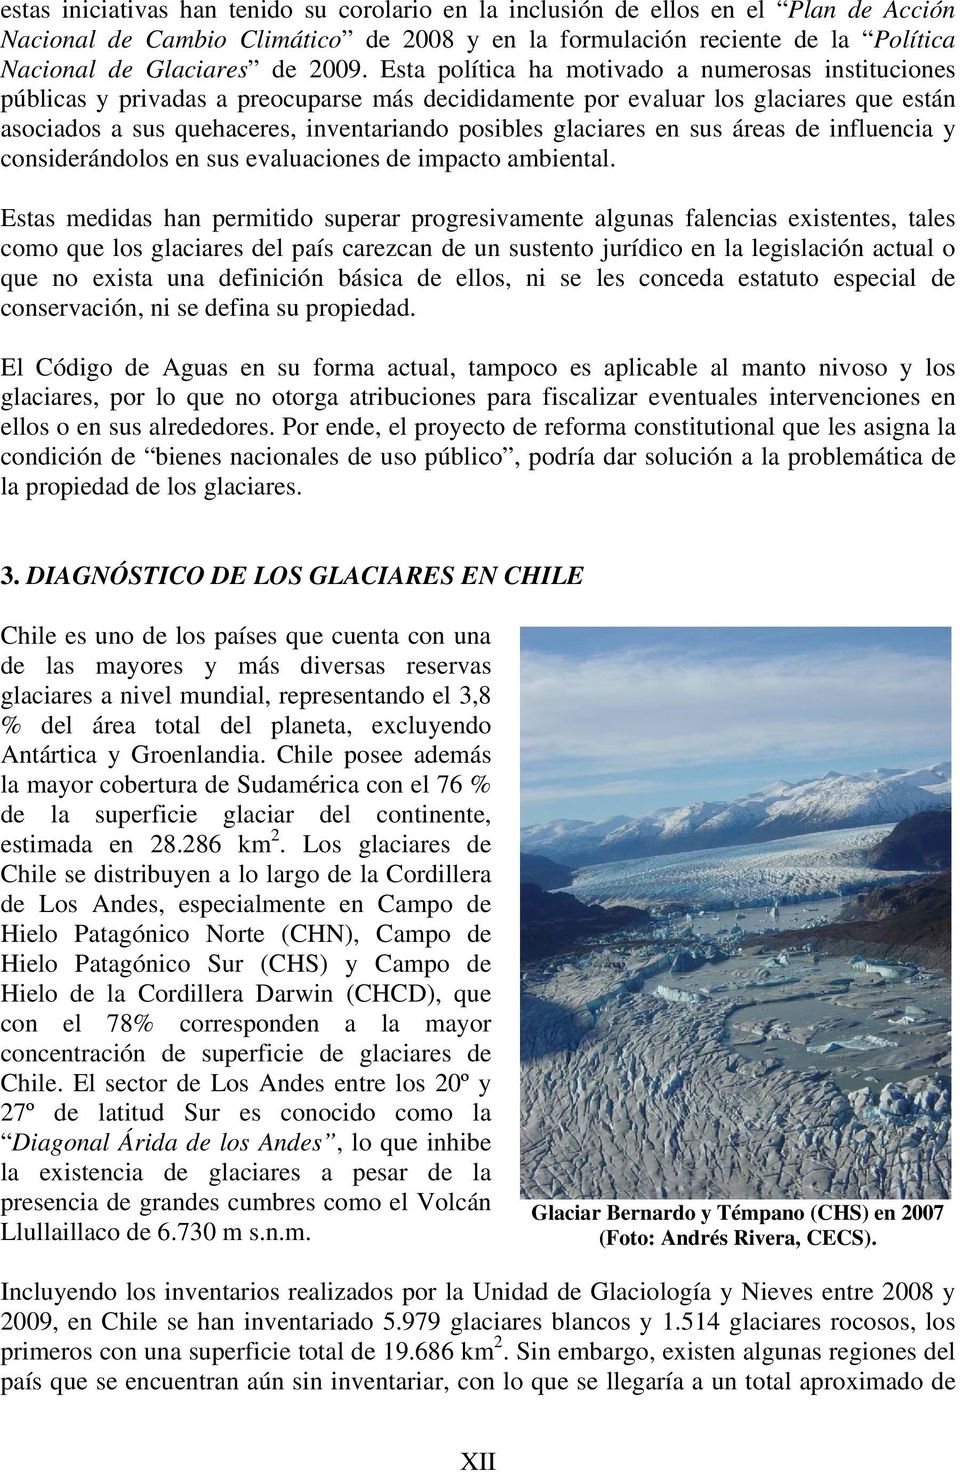 glaciares en sus áreas de influencia y considerándolos en sus evaluaciones de impacto ambiental.